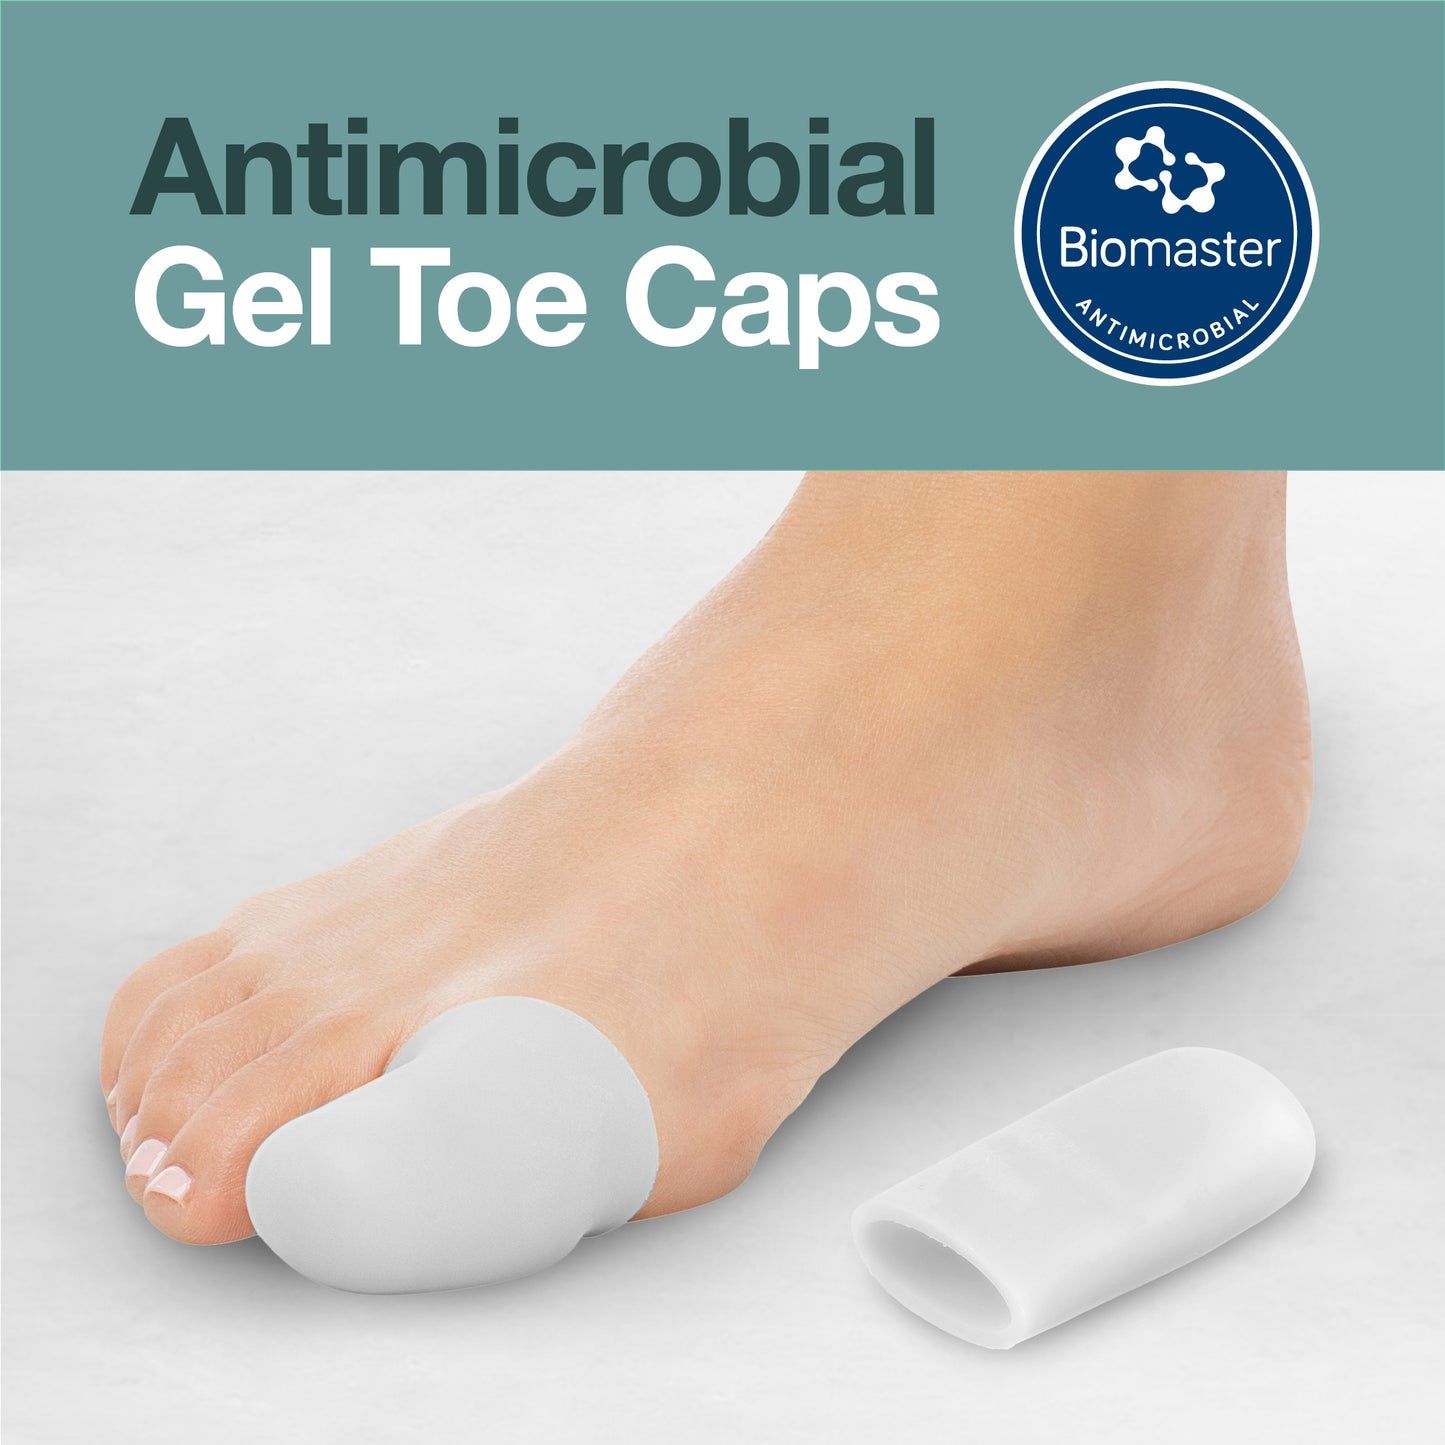 Antimicrobial Gel Toe Caps